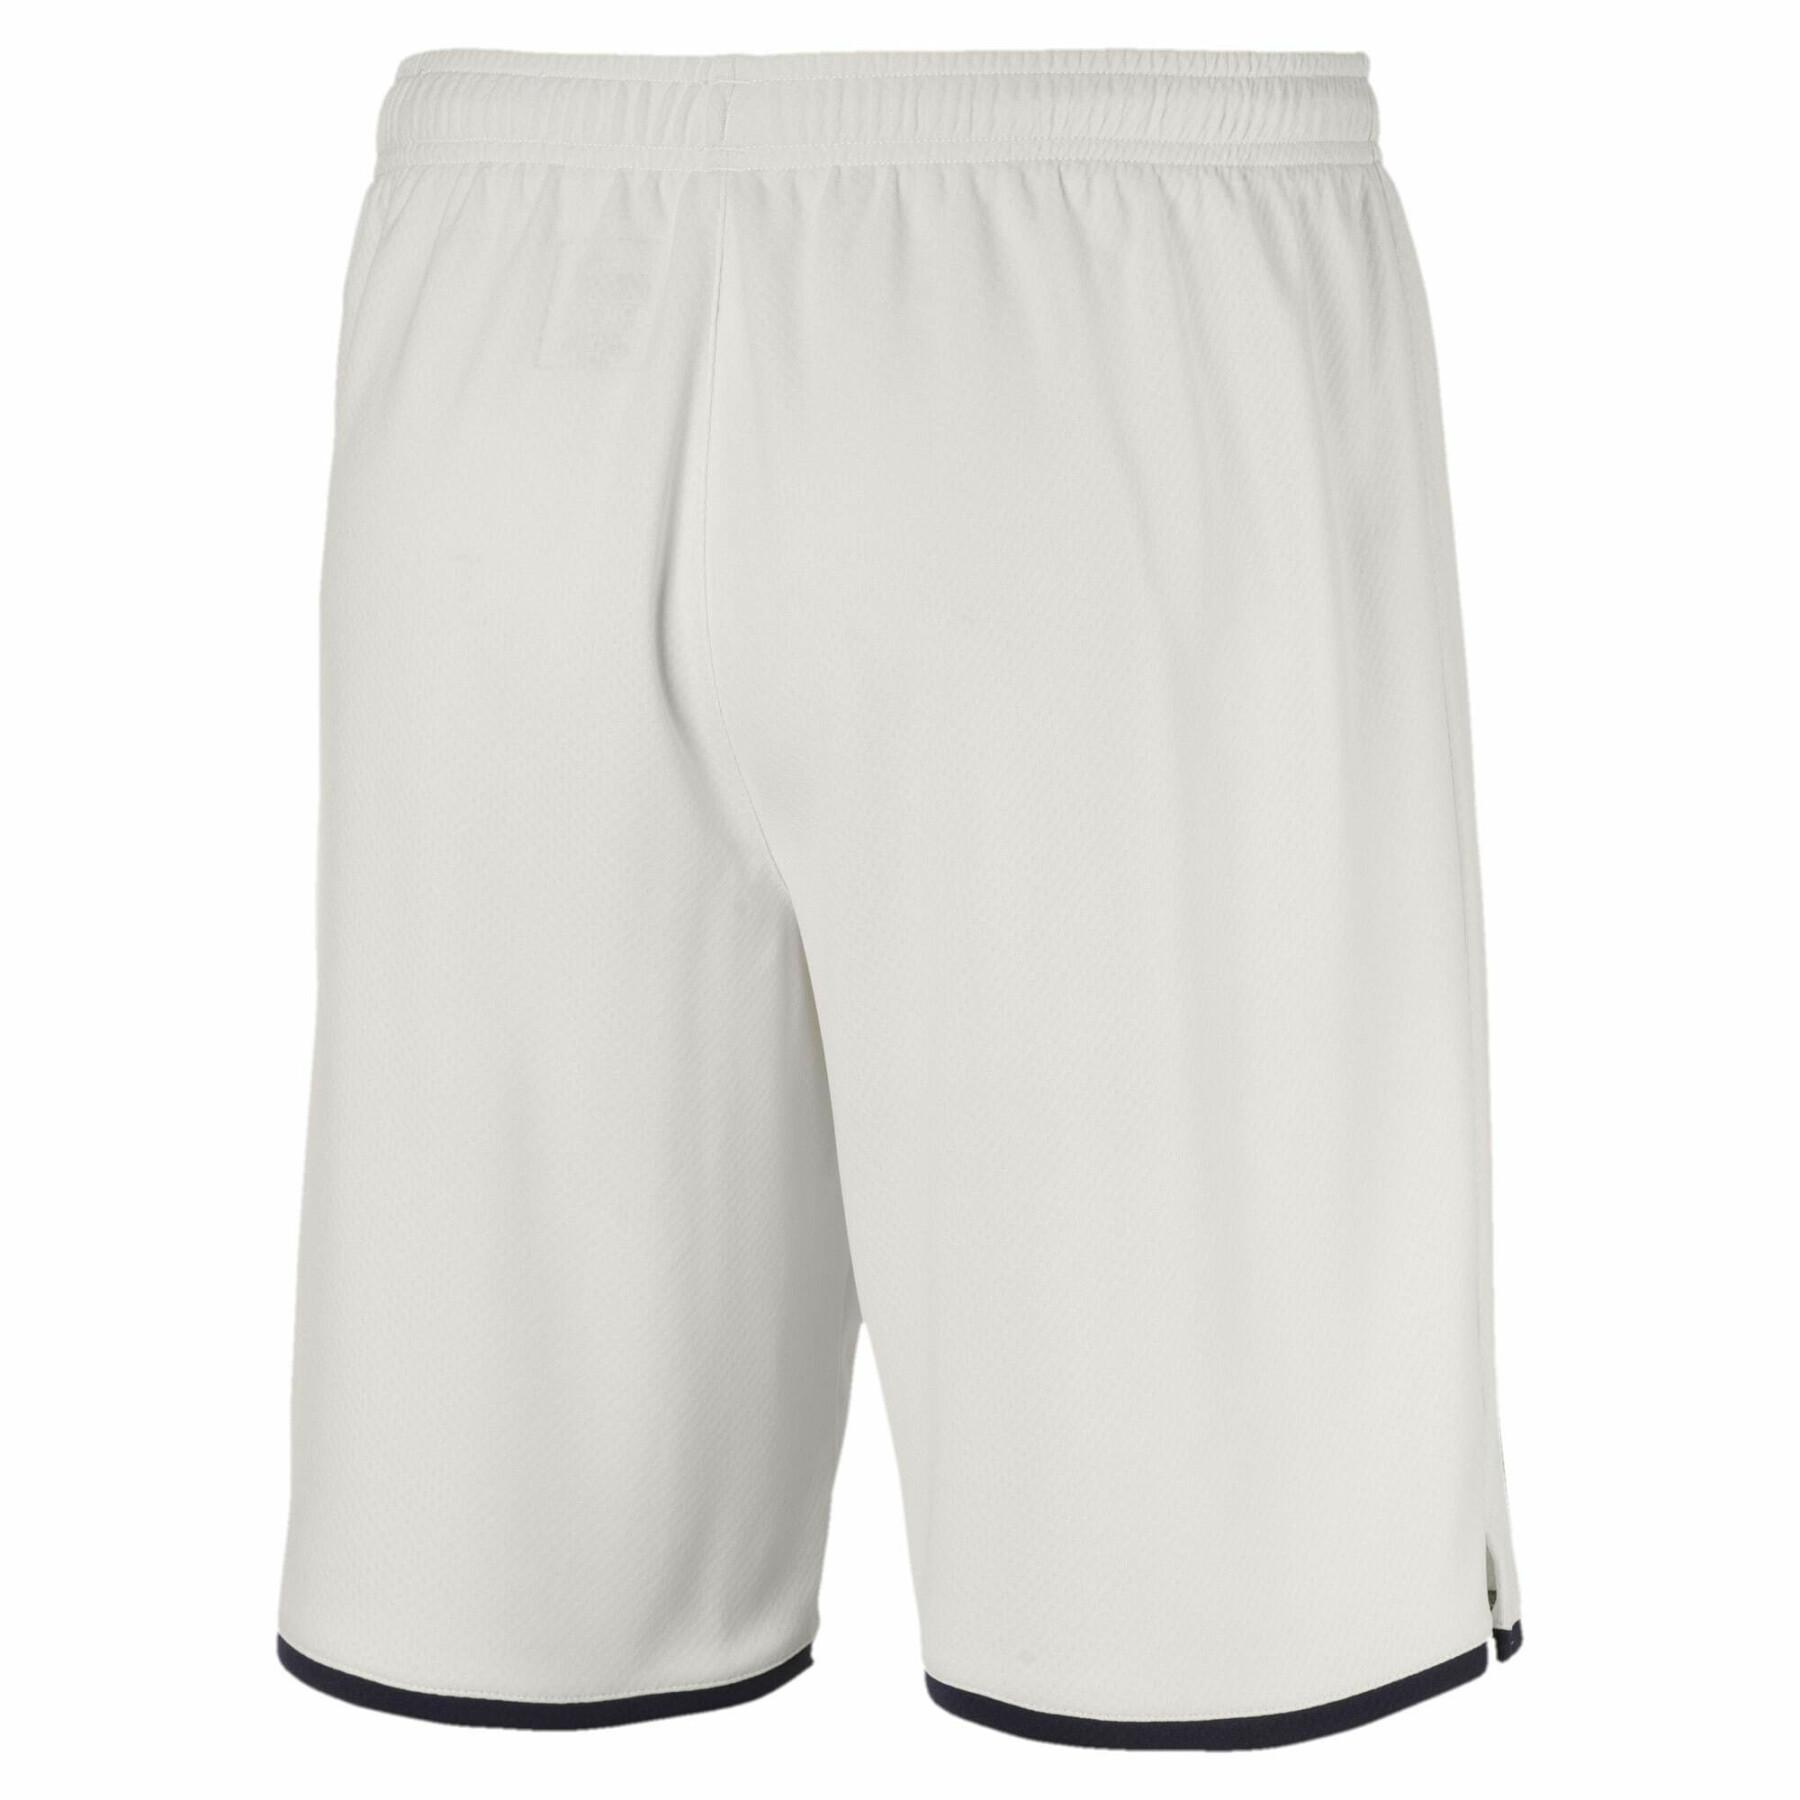 Pantalones cortos para exteriores Girondins de Bordeaux 2019/20